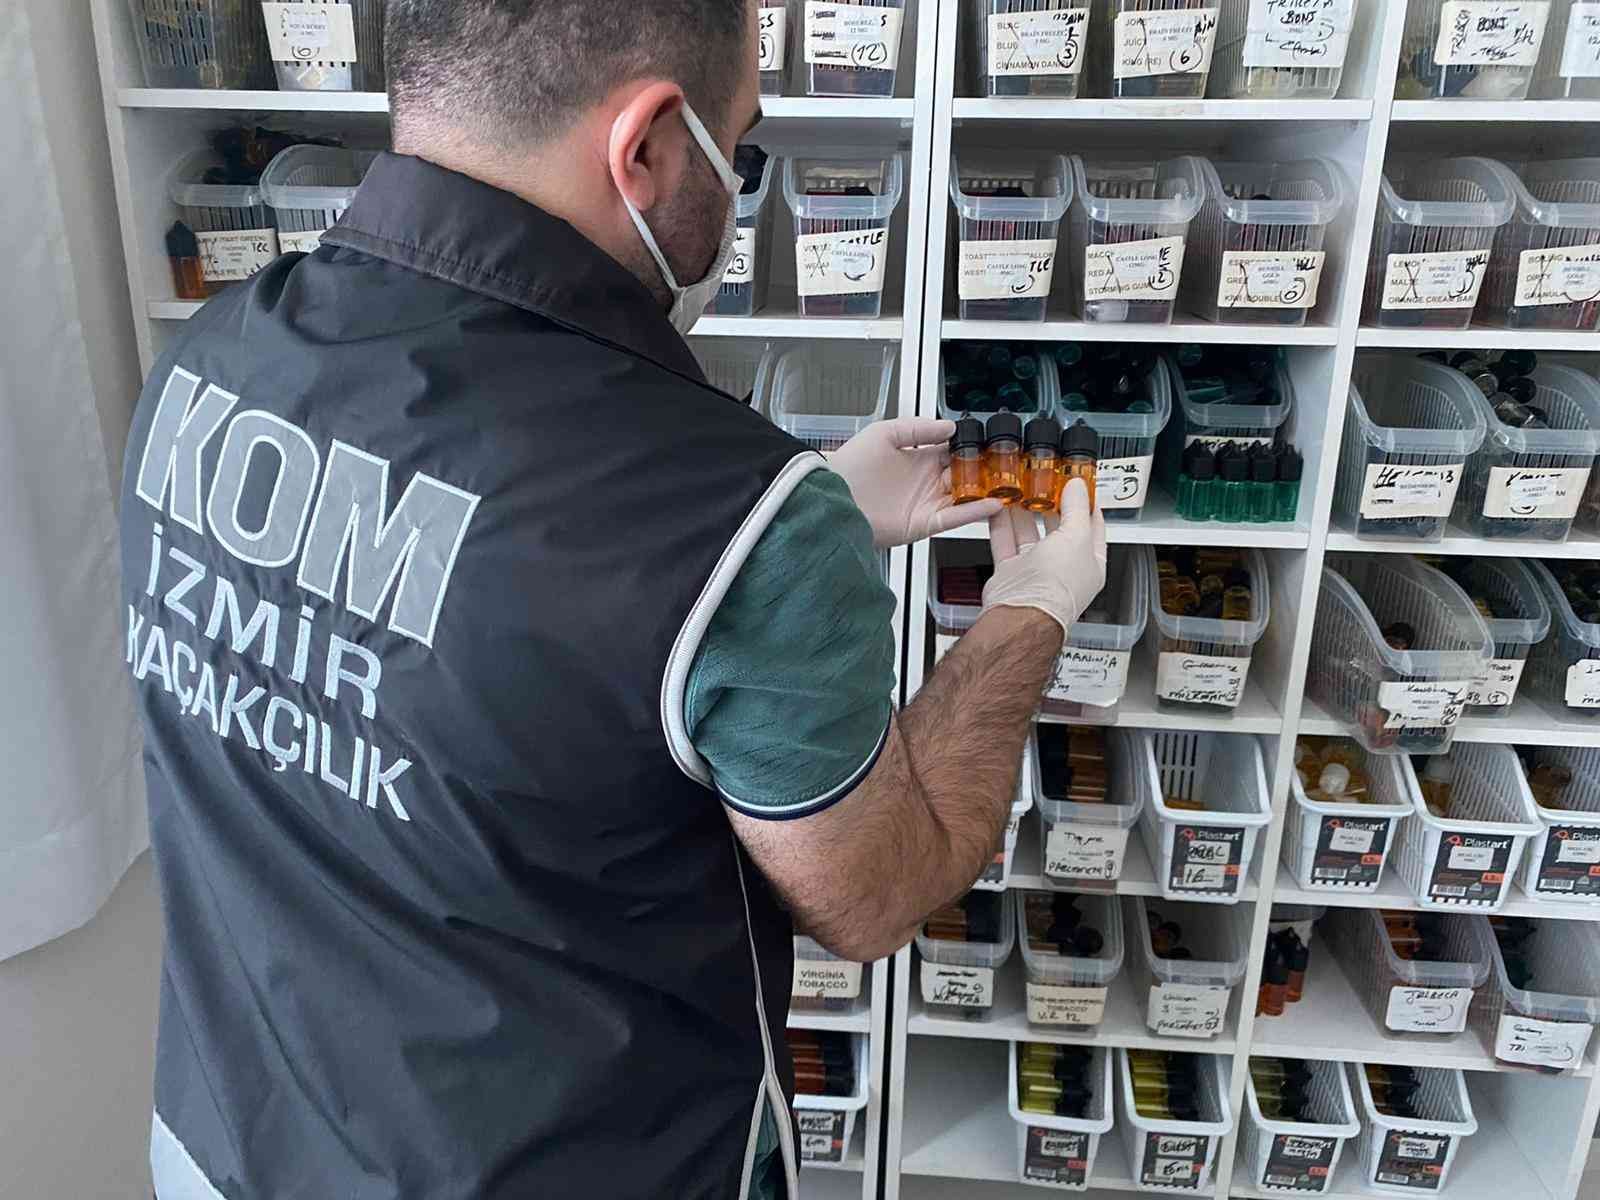 İzmir’de elektronik sigara ve likitine yönelik operasyon #izmir